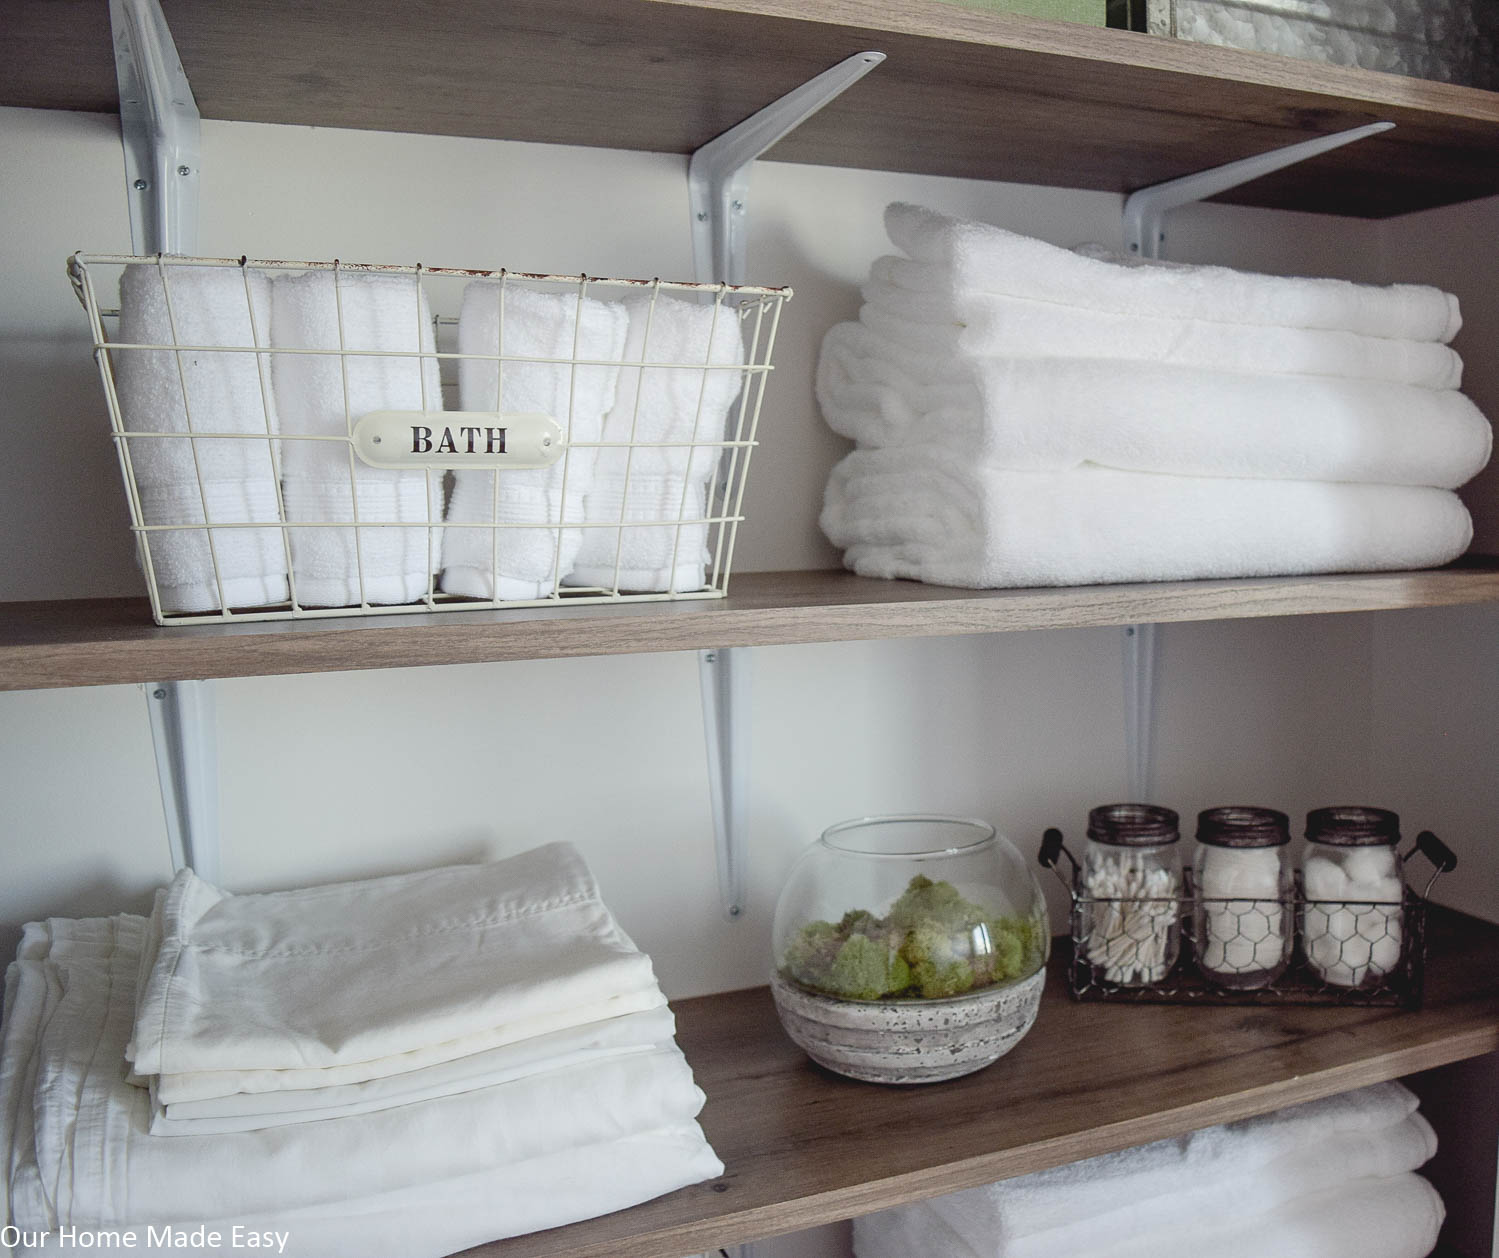 How to organize deep closet shelves